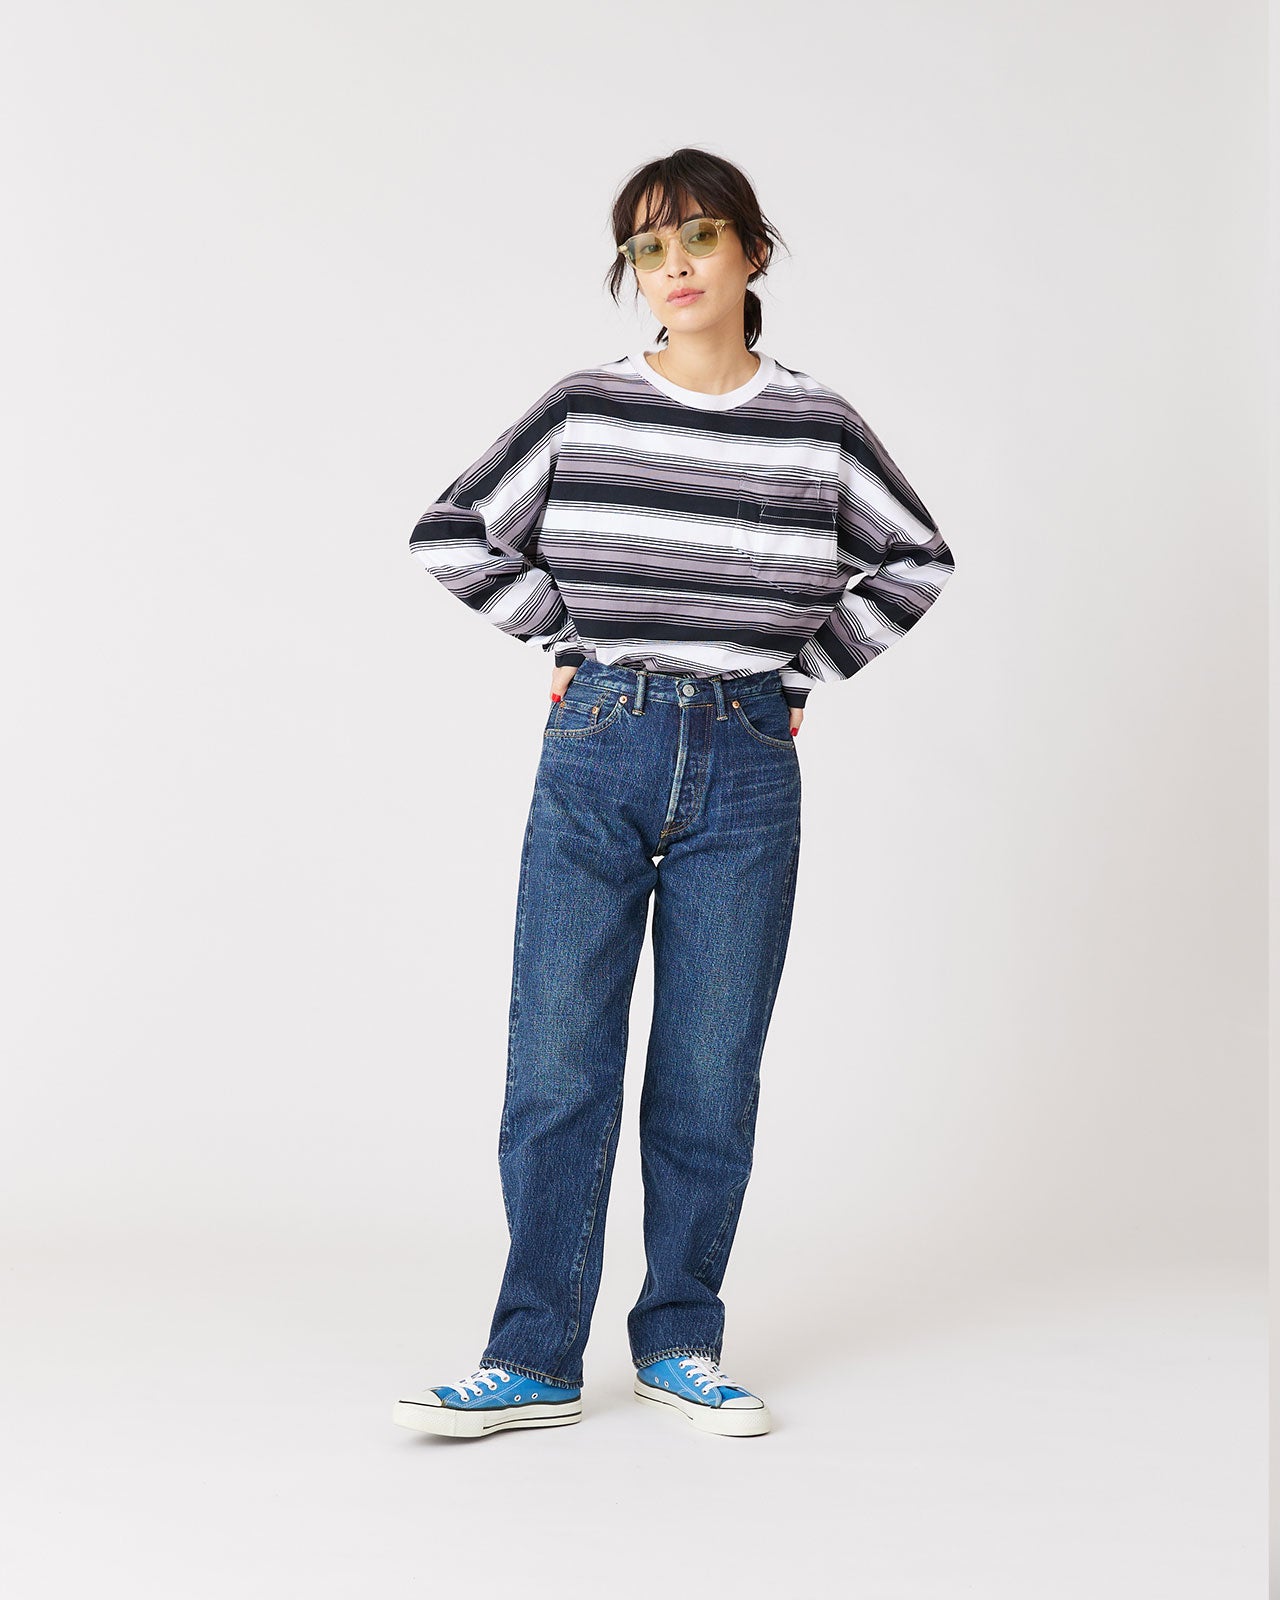 【最終値下】THE SHINZONE originaly jeans サイズ32